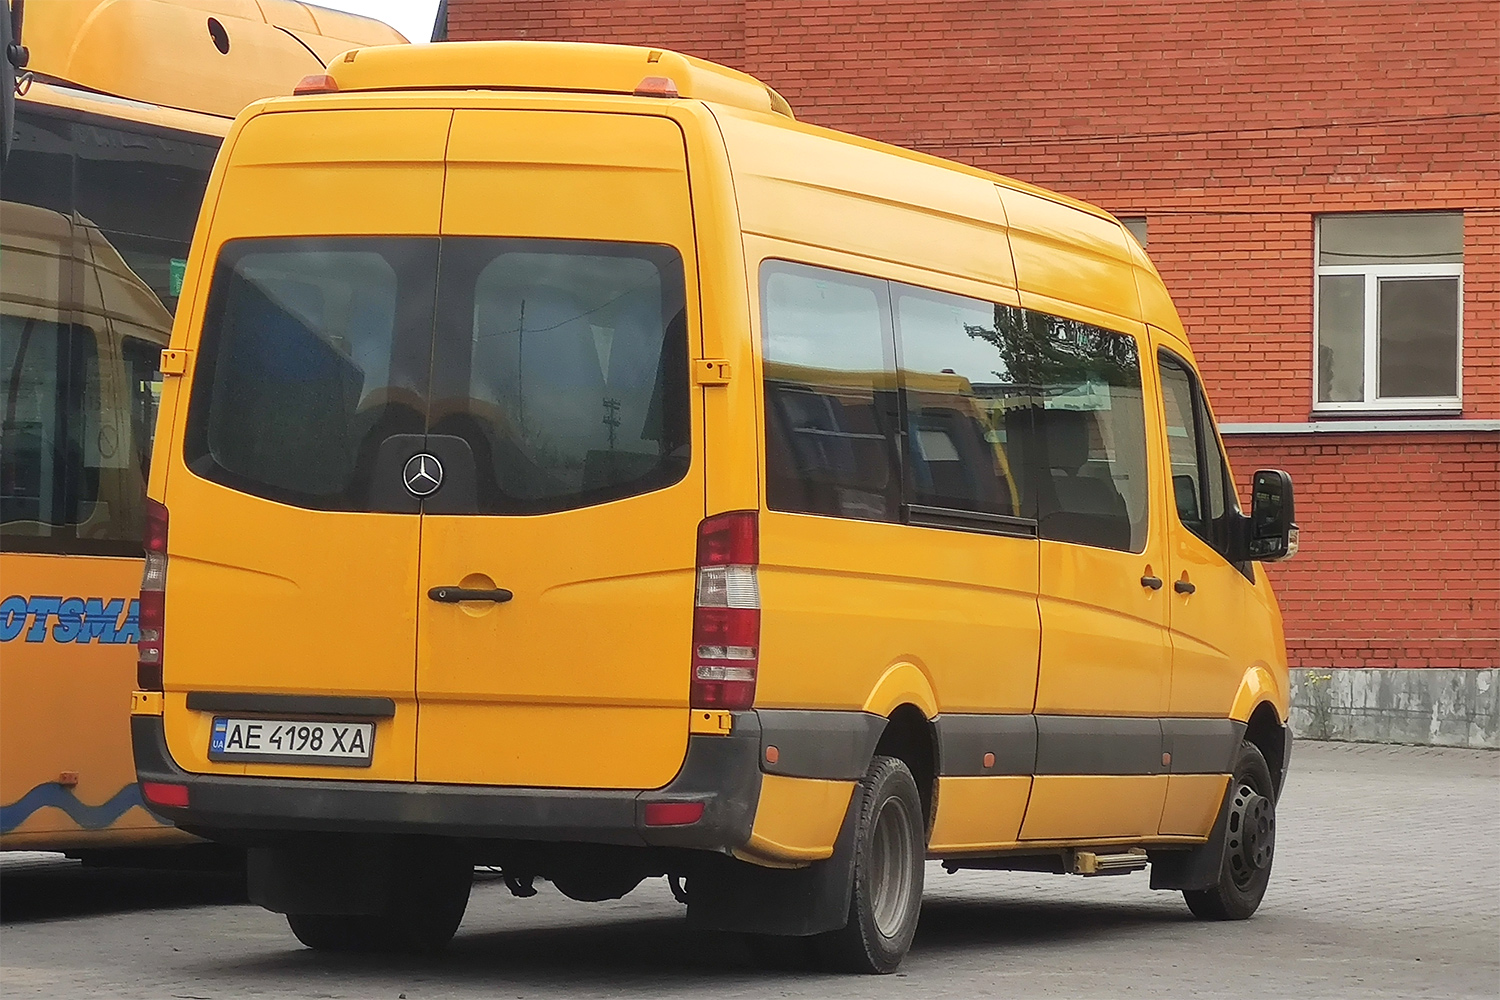 Dnepropetrovsk region, Mercedes-Benz Sprinter W906 513CDI # AE 4198 XA